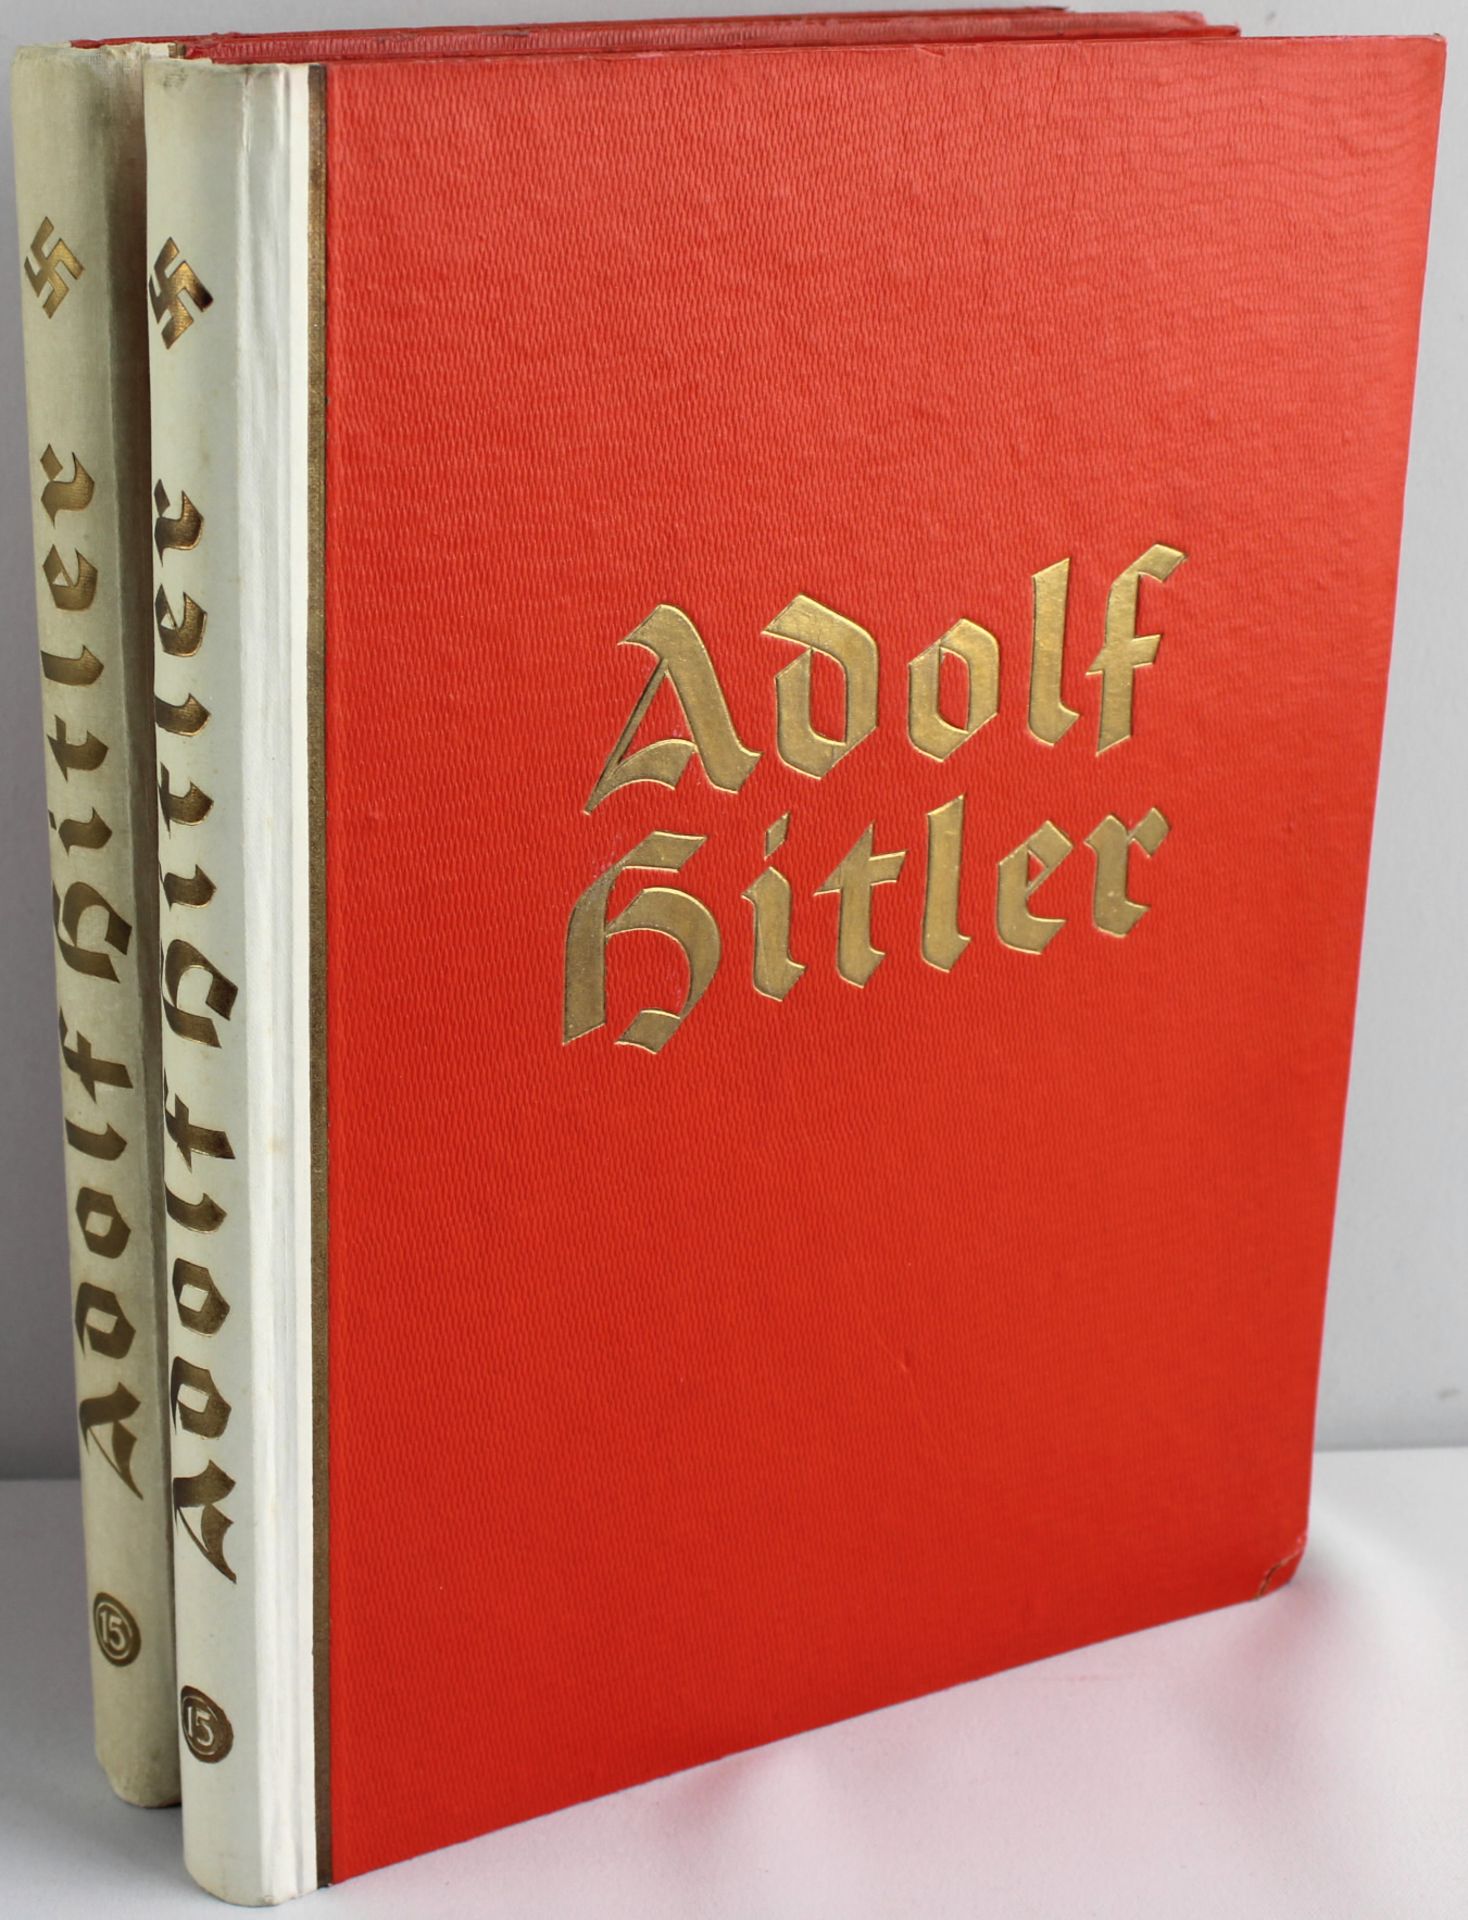 2 Sammelalben "Adolf Hitler", Zigaretten-Bilder 1936, komplett